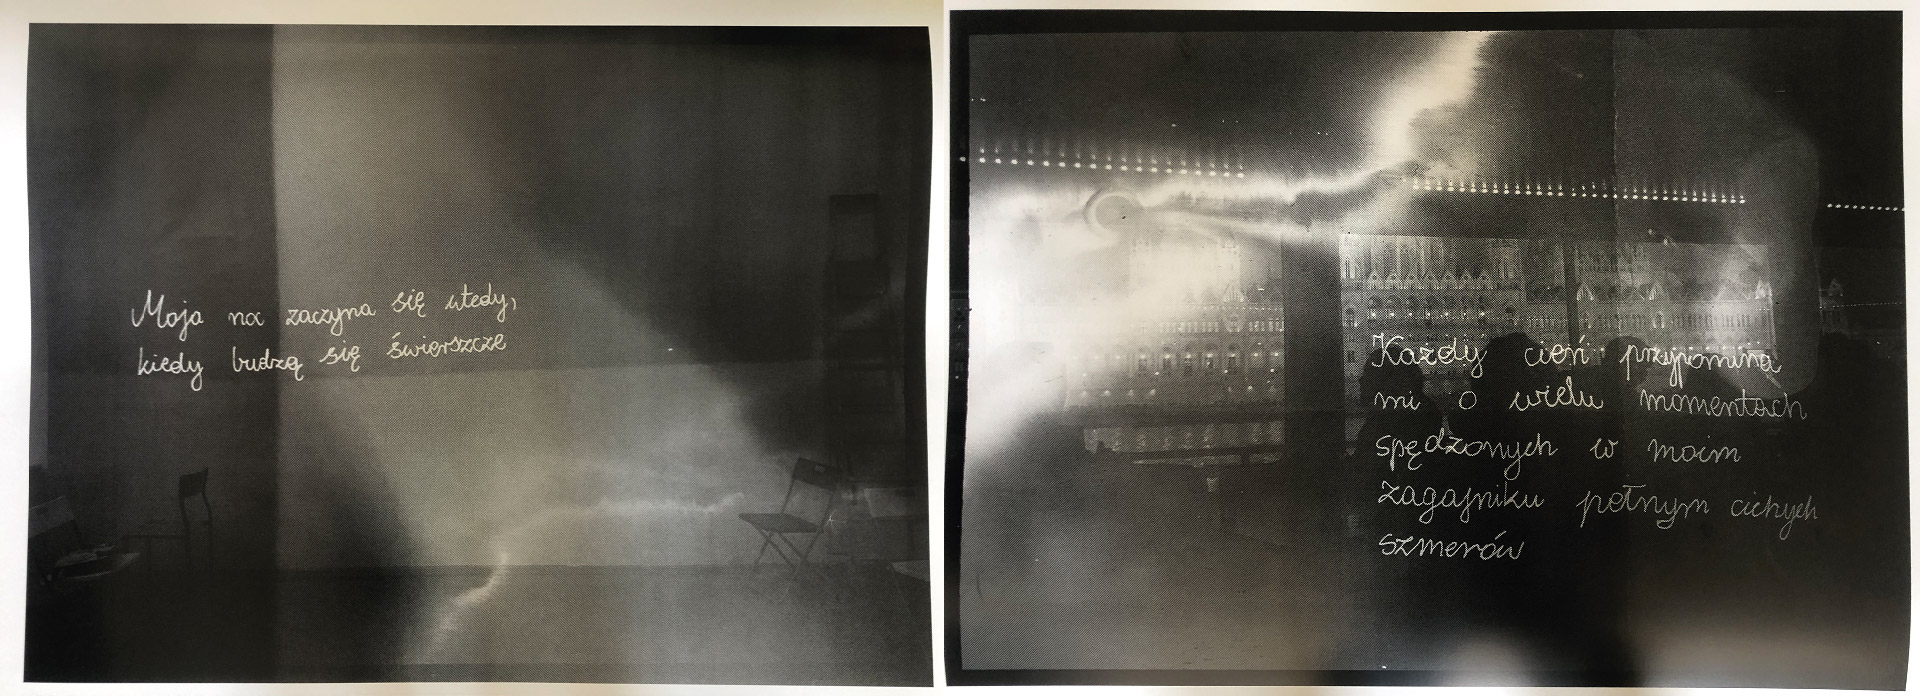 Obraz przedstawia dwa niewyraźne zdjęcia ciemnych wnętrz. Na jednym widoczne są krzesła, na drugim sylwetki ludzkie na tle okna. Na obu zdjęciach dodane są odręczne, białe napisy.